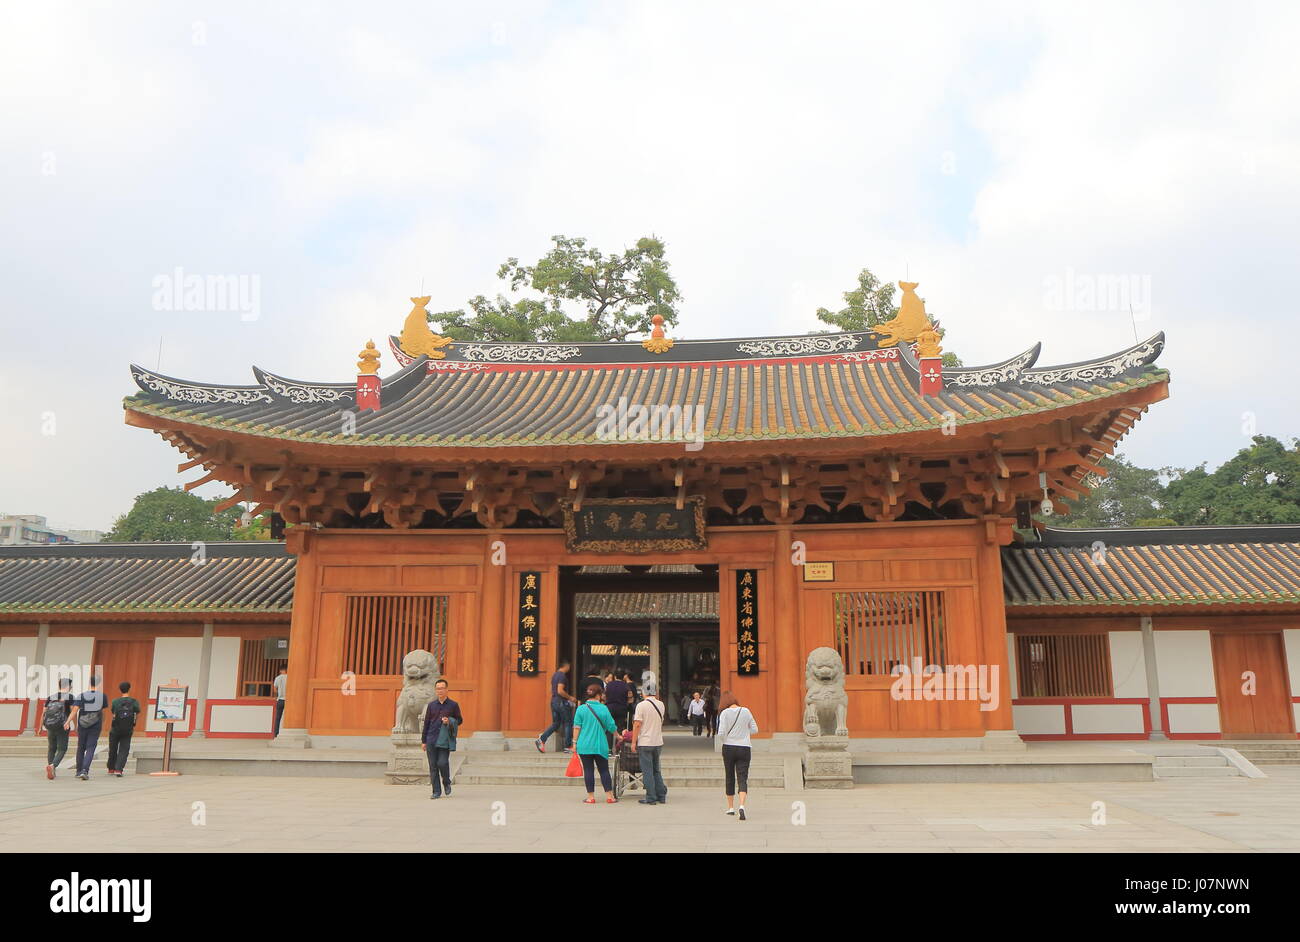 Personnes visitent le temple Guangxiao à Guangzhou en Chine. Guangxiao Temple est un des plus anciens temples bouddhistes à Guangzhou. Banque D'Images